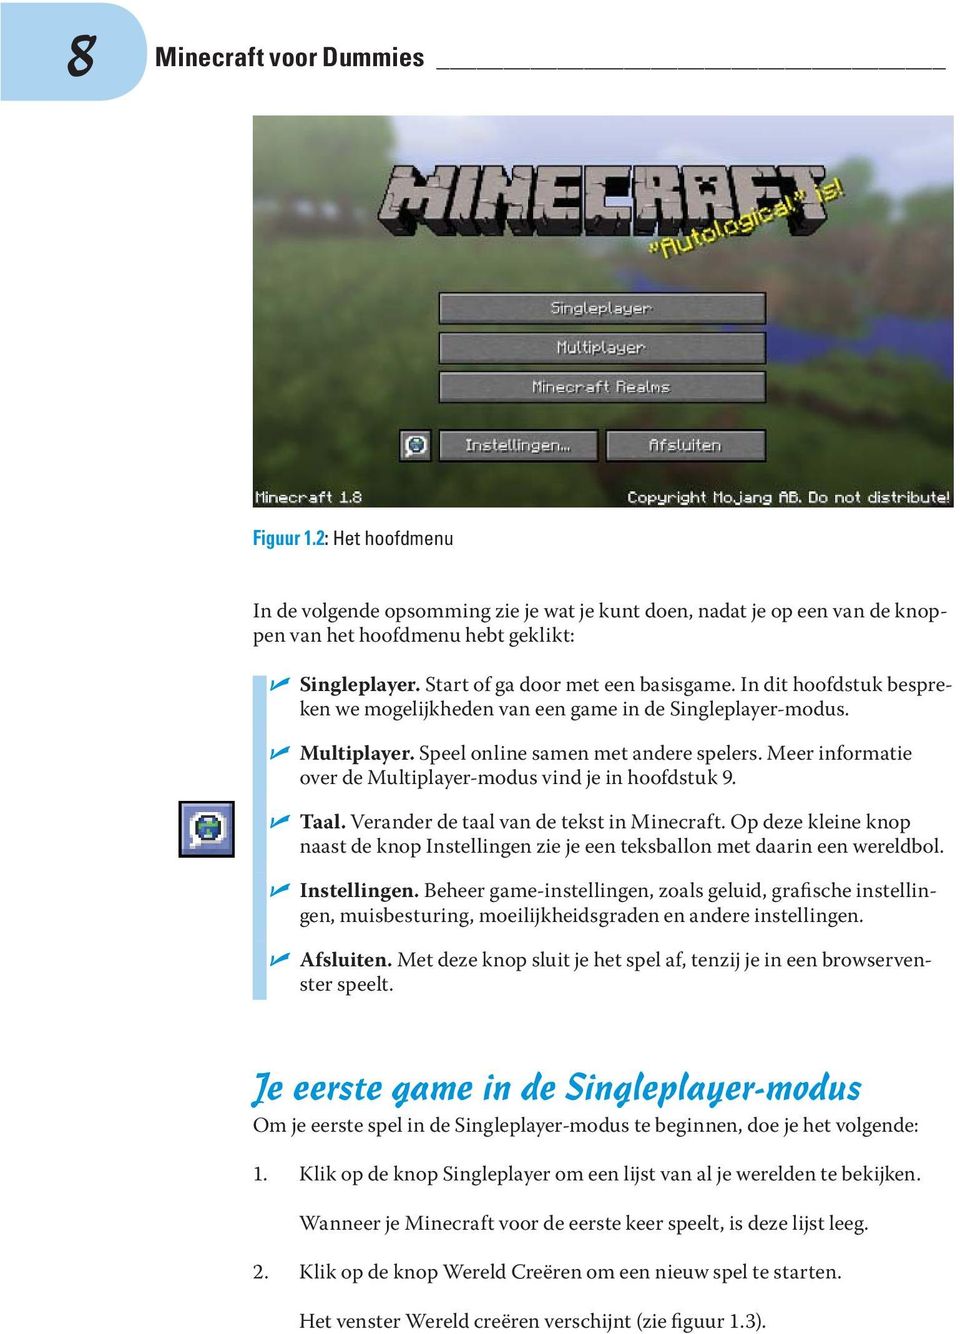 Meer informatie over de Multiplayer-modus vind je in hoofdstuk 9. Taal. Verander de taal van de tekst in Minecraft.